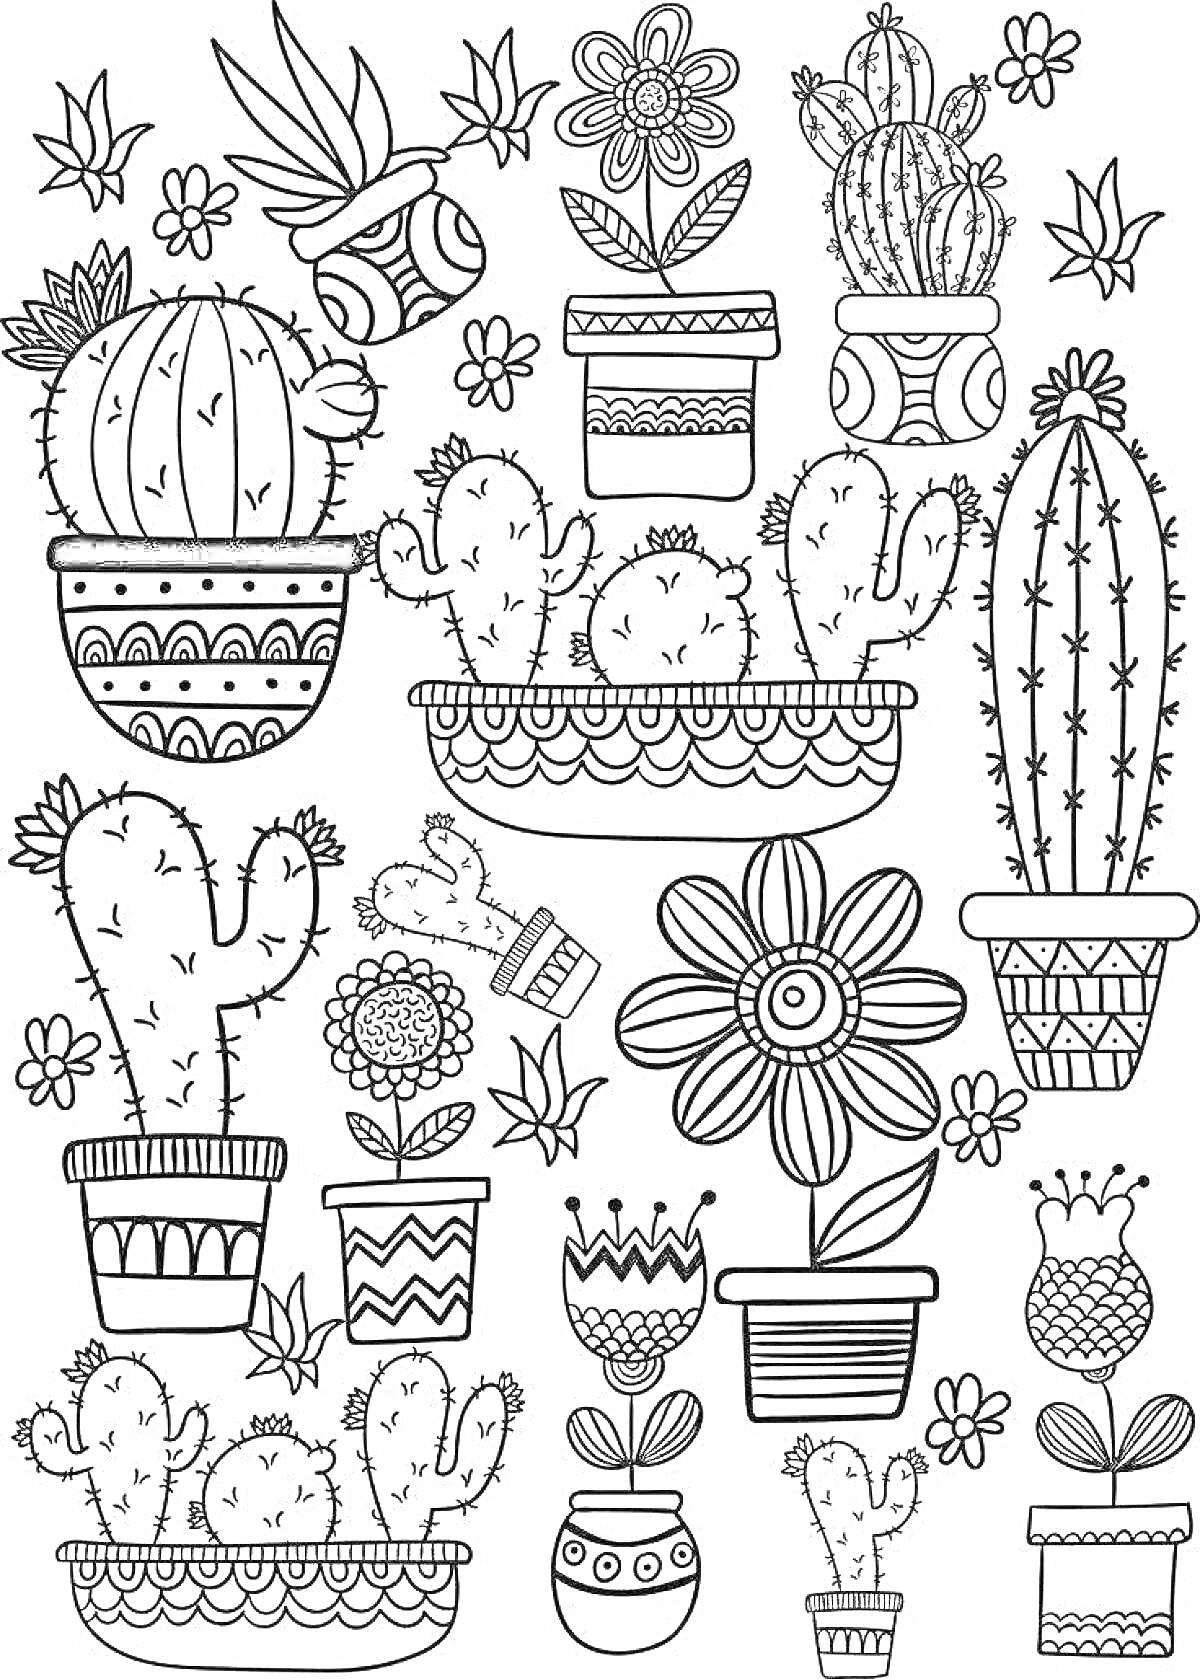 Раскраска Кактусы и цветы в горшках с декоративными элементами